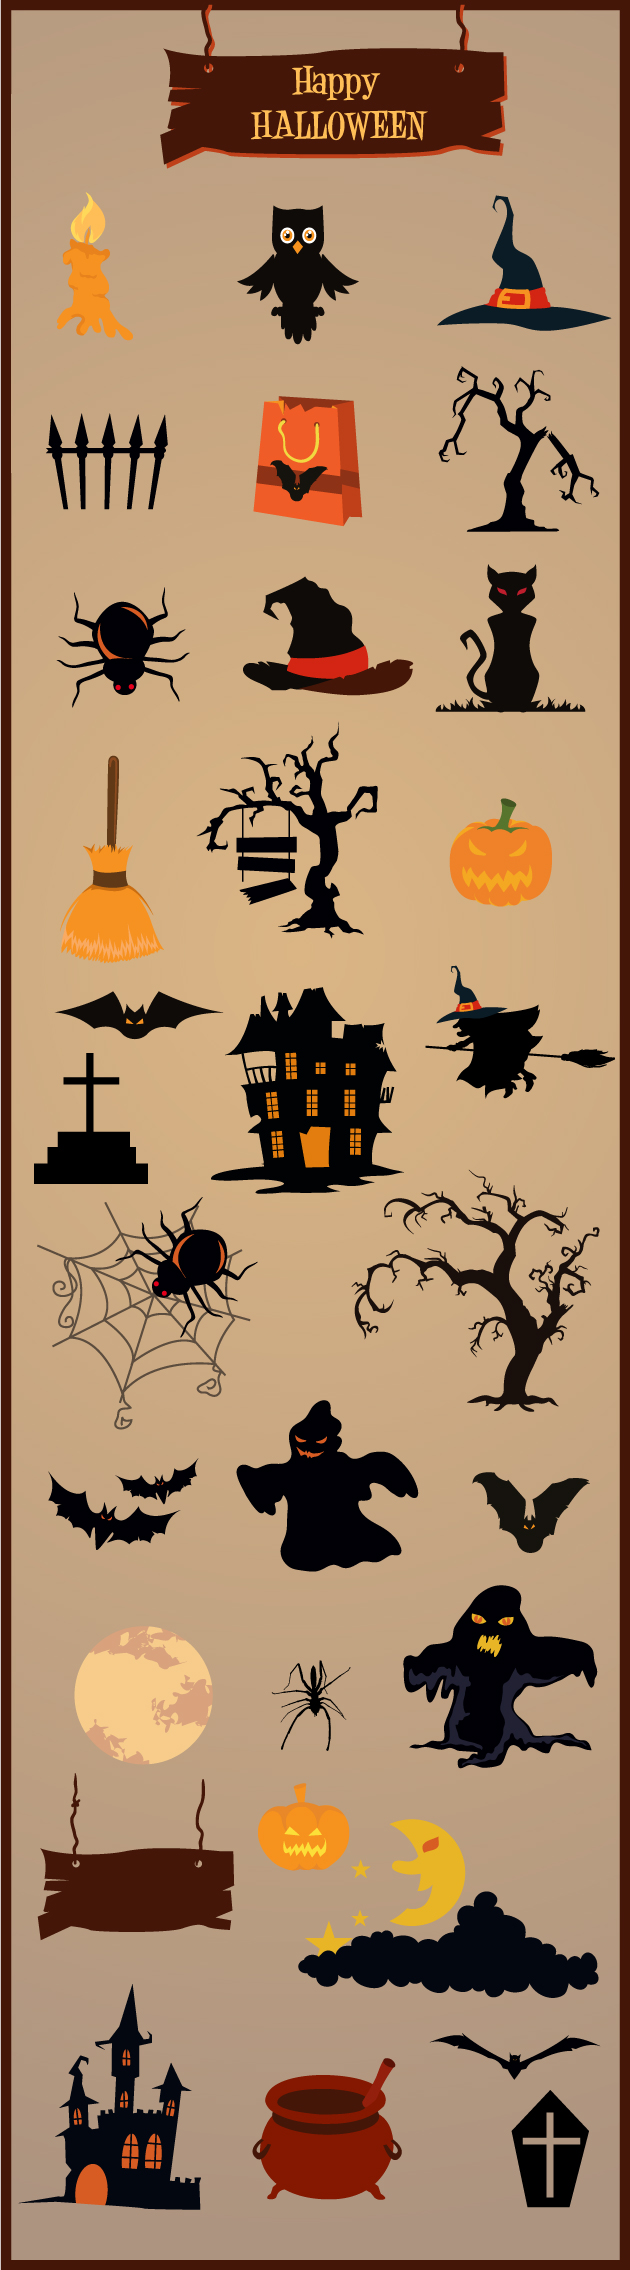 Halloween Vector Elements Set 1 2